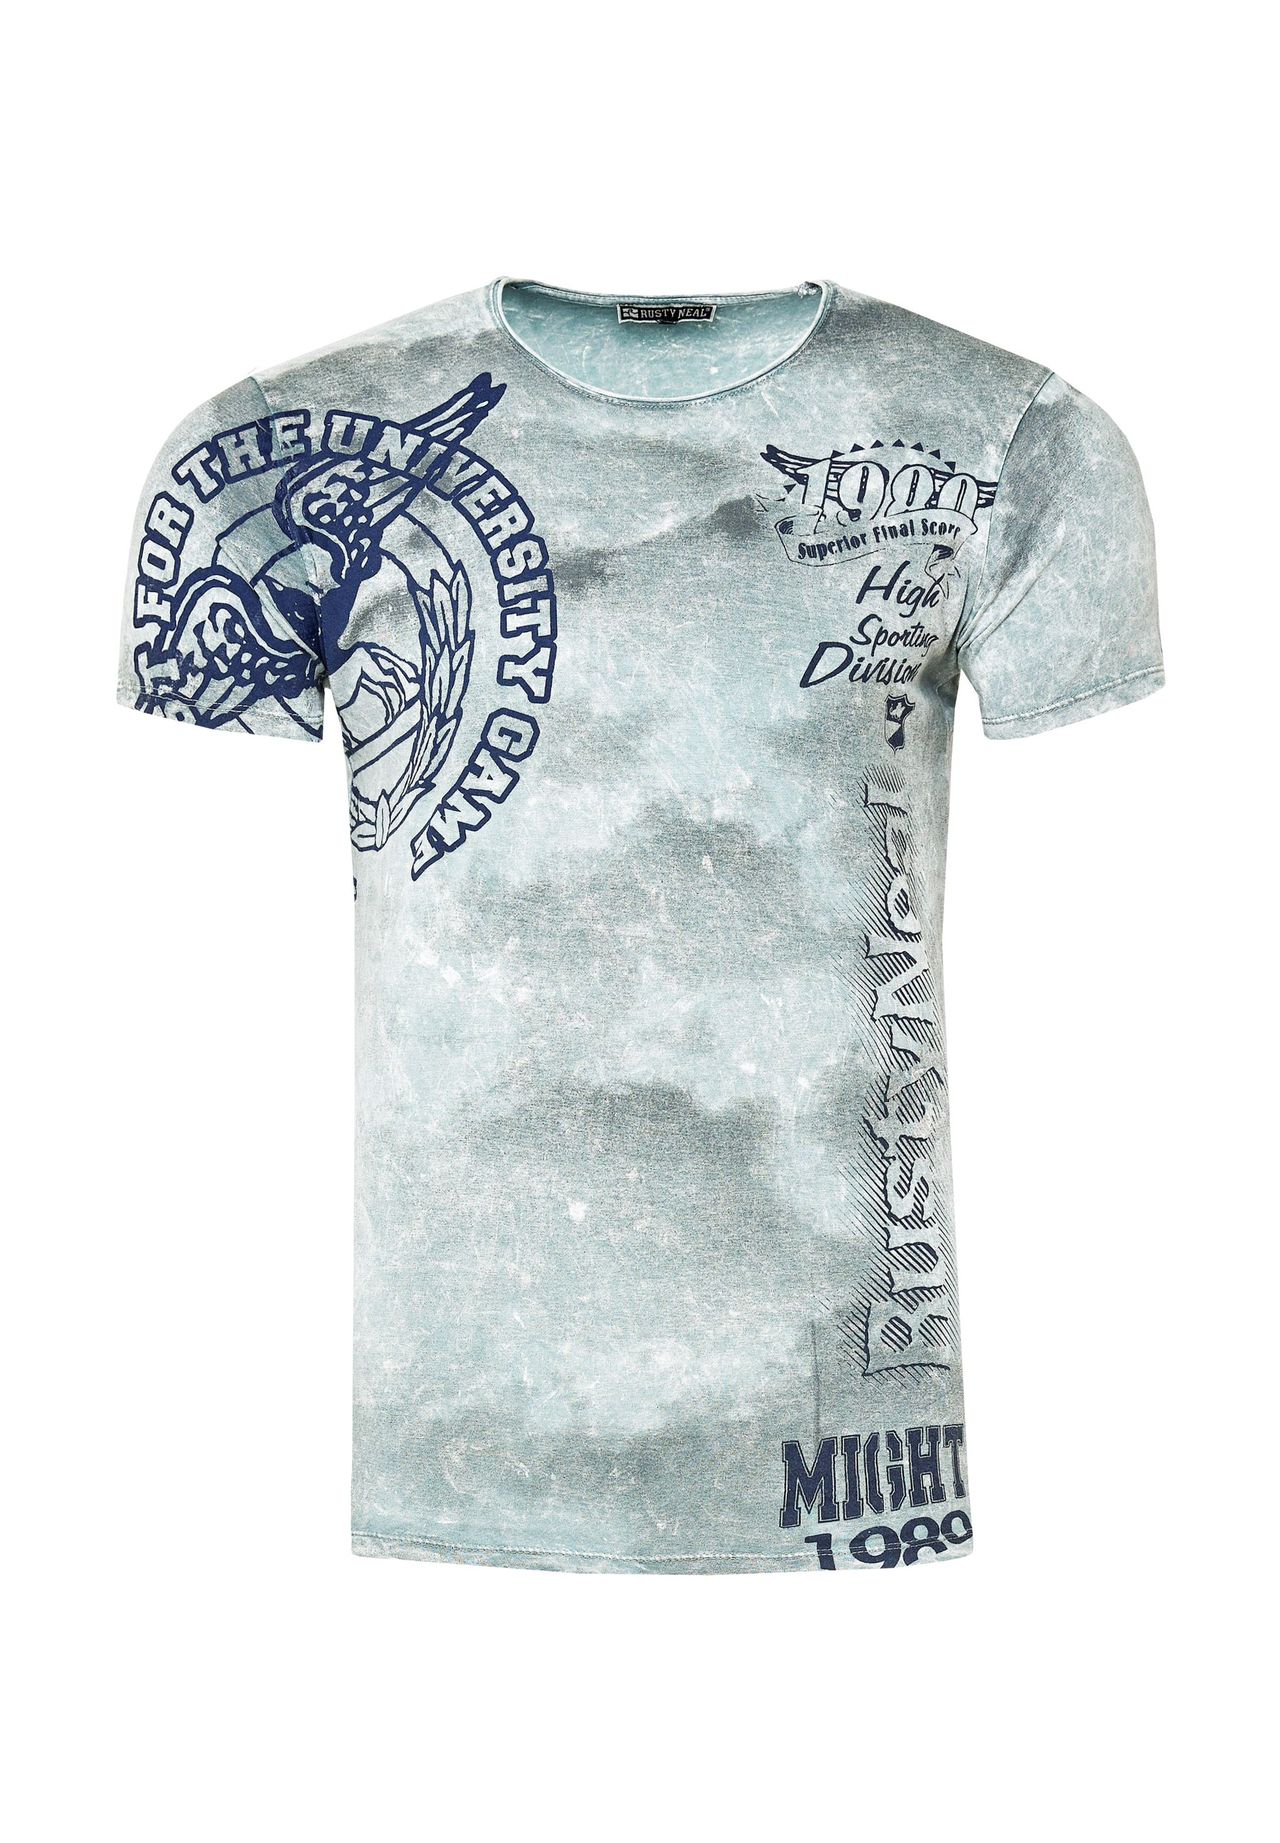 RUSTY NEAL® T-Shirt mit eindrucksvollem Print | GALERIA